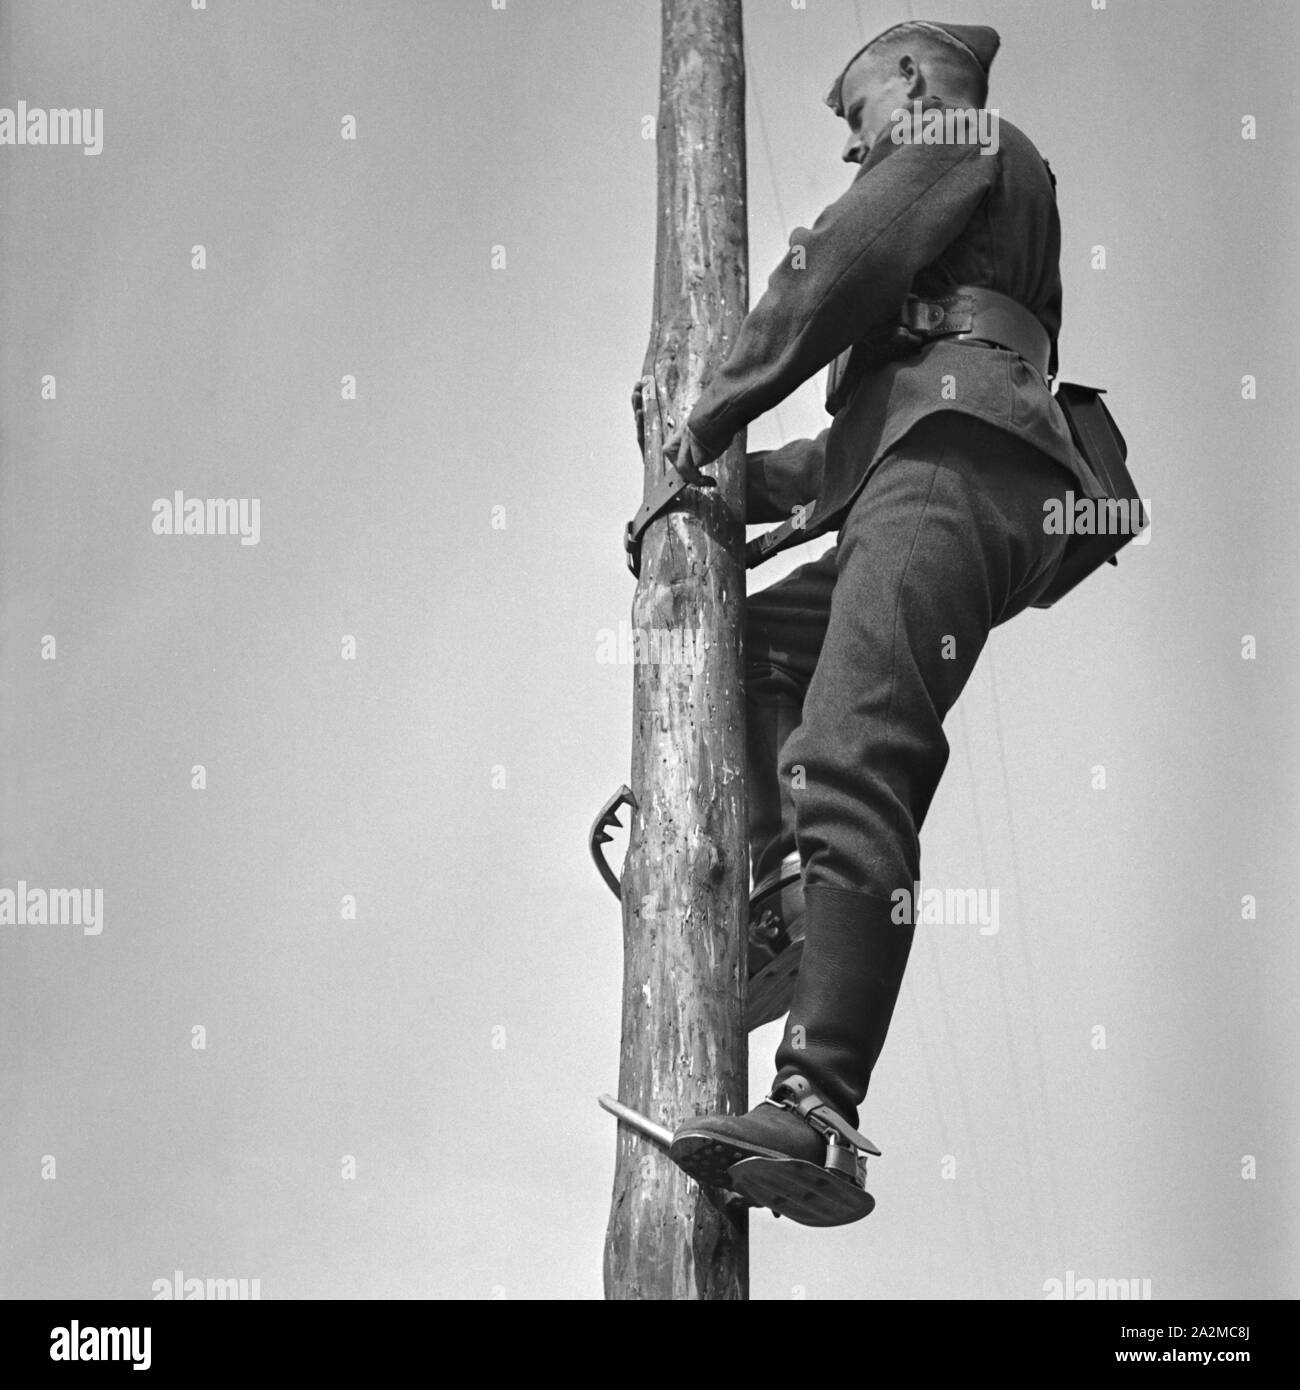 Original-Bildunterschrift: Soldat eines Telegrafenbauzugs besteigt einen Mast mit Steigeisen, Deutschland 1940er Jahre. Soldier of a pioneer construction climbing up a telegraph mast, Germany 1940s. Stock Photo